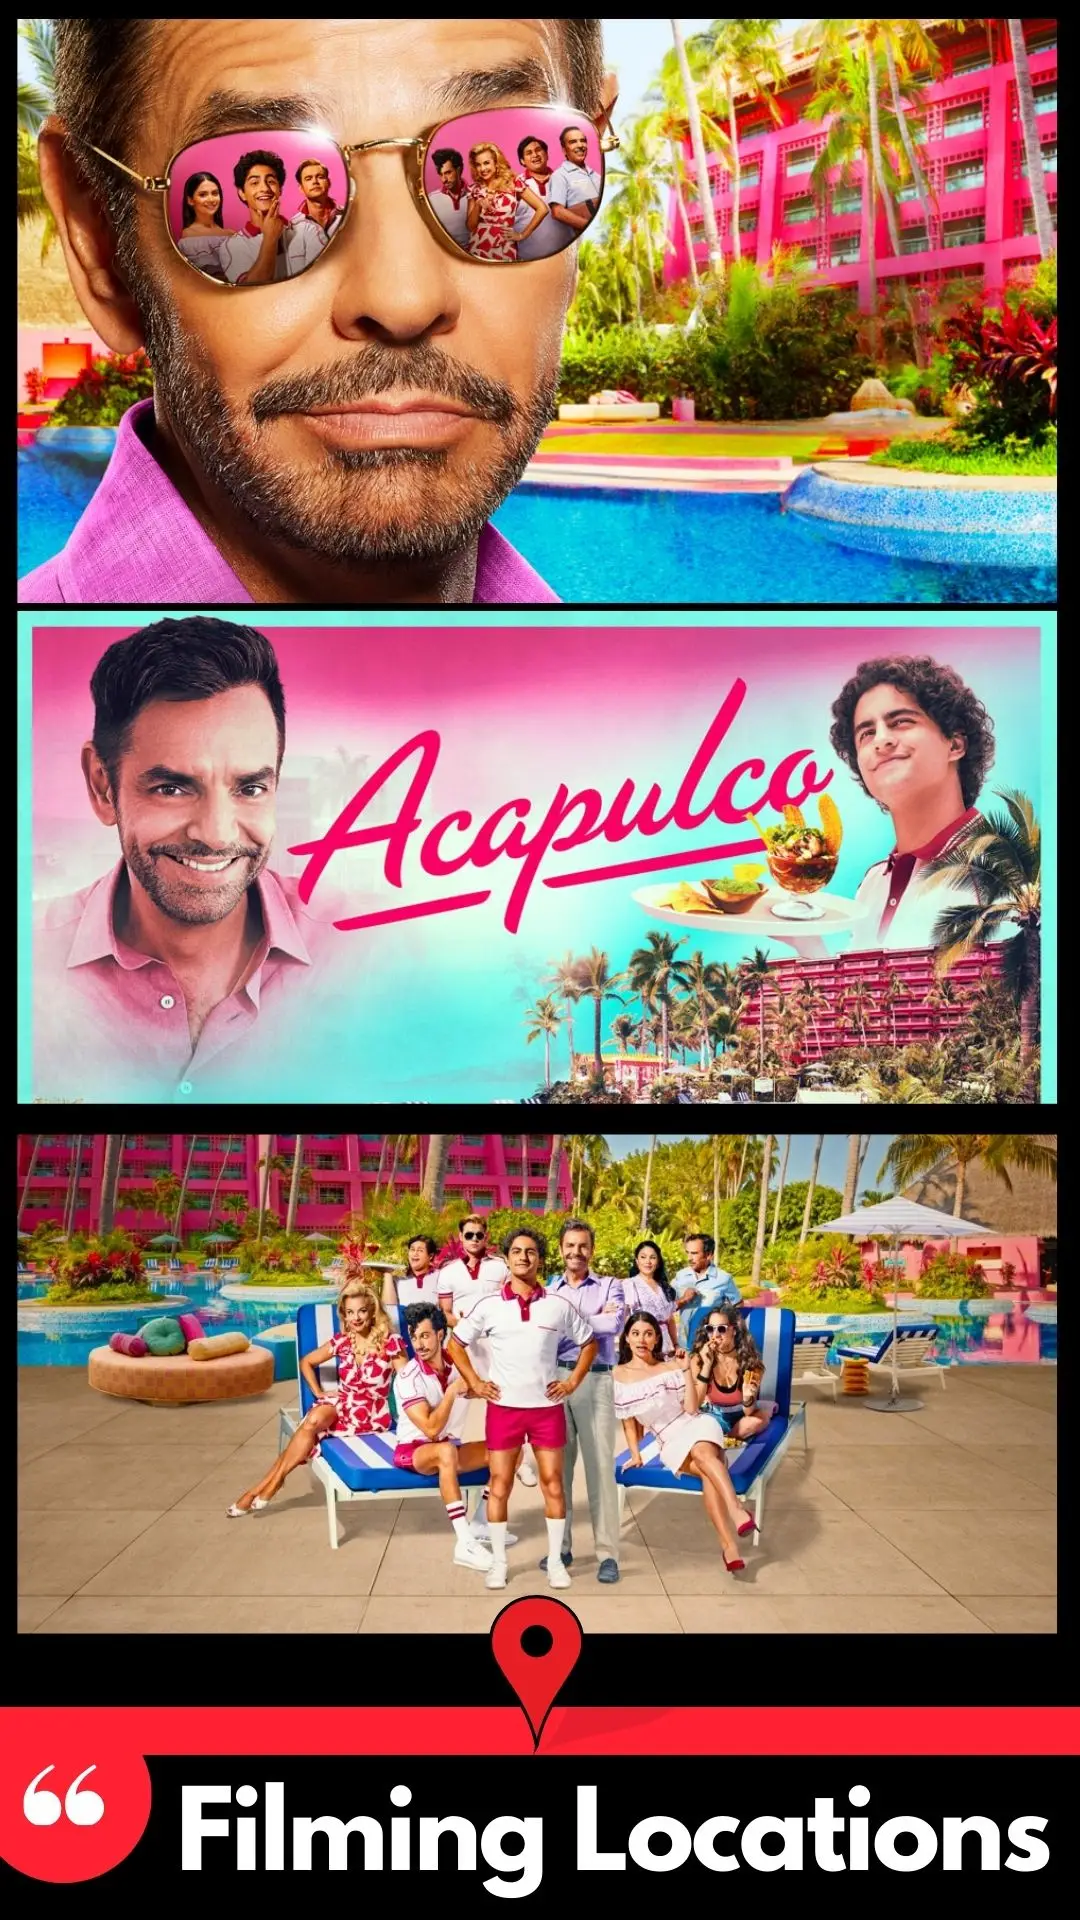 Acapulco Season 3 Filming Locations